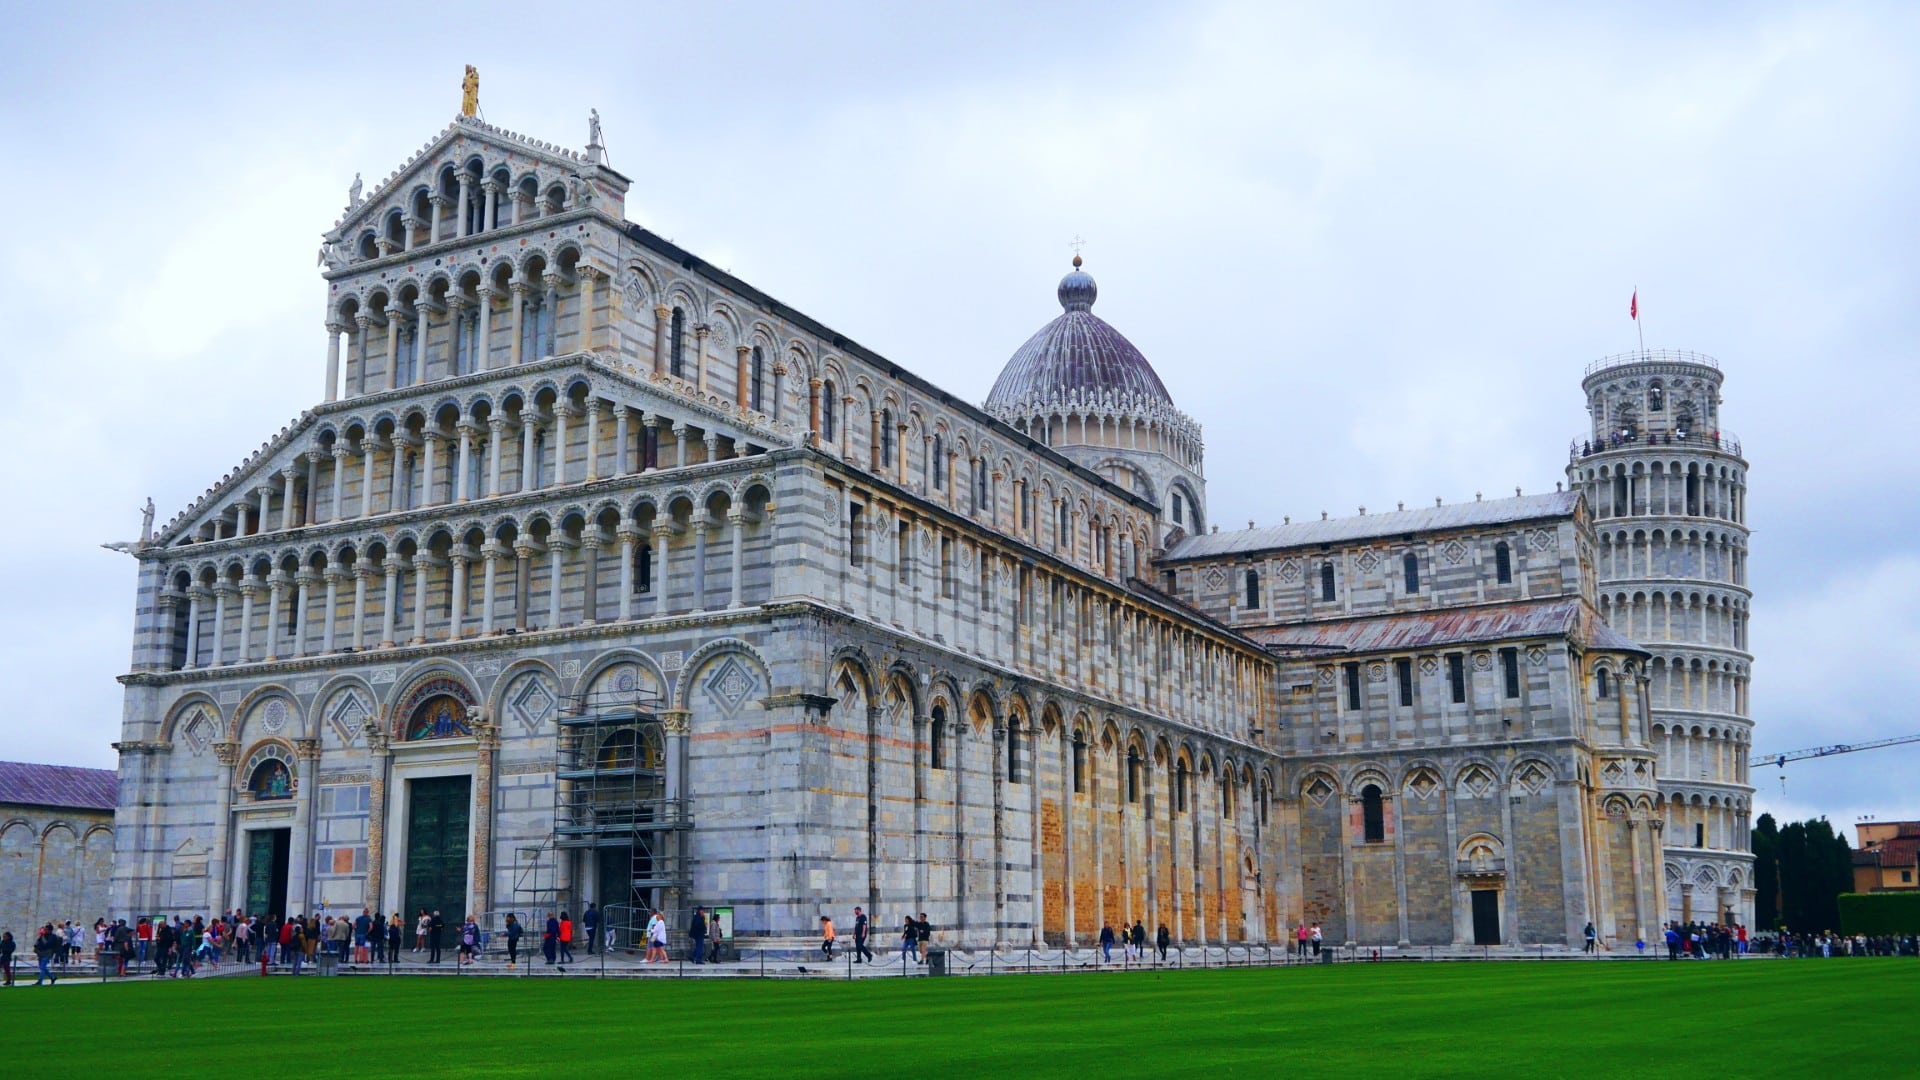 Dónde dormir en Pisa, Italia - Mejores zonas y hoteles